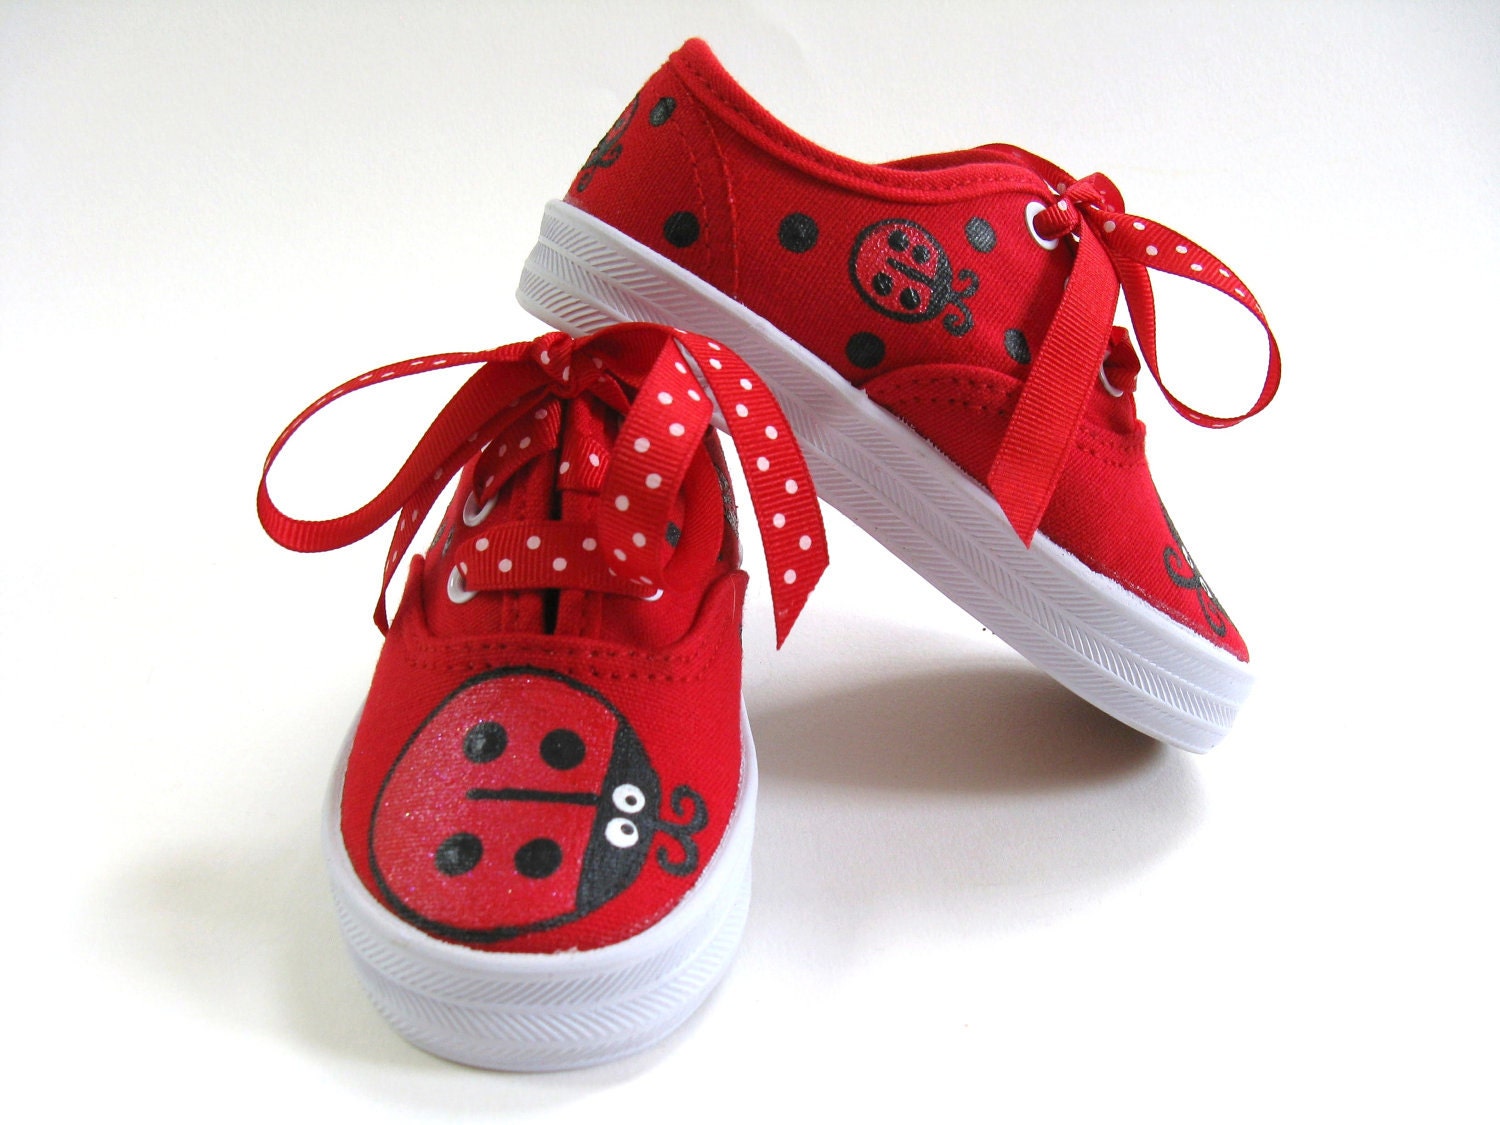 Girls Ladybug Shoes Baby and Toddler Red by boygirlboygirldesign